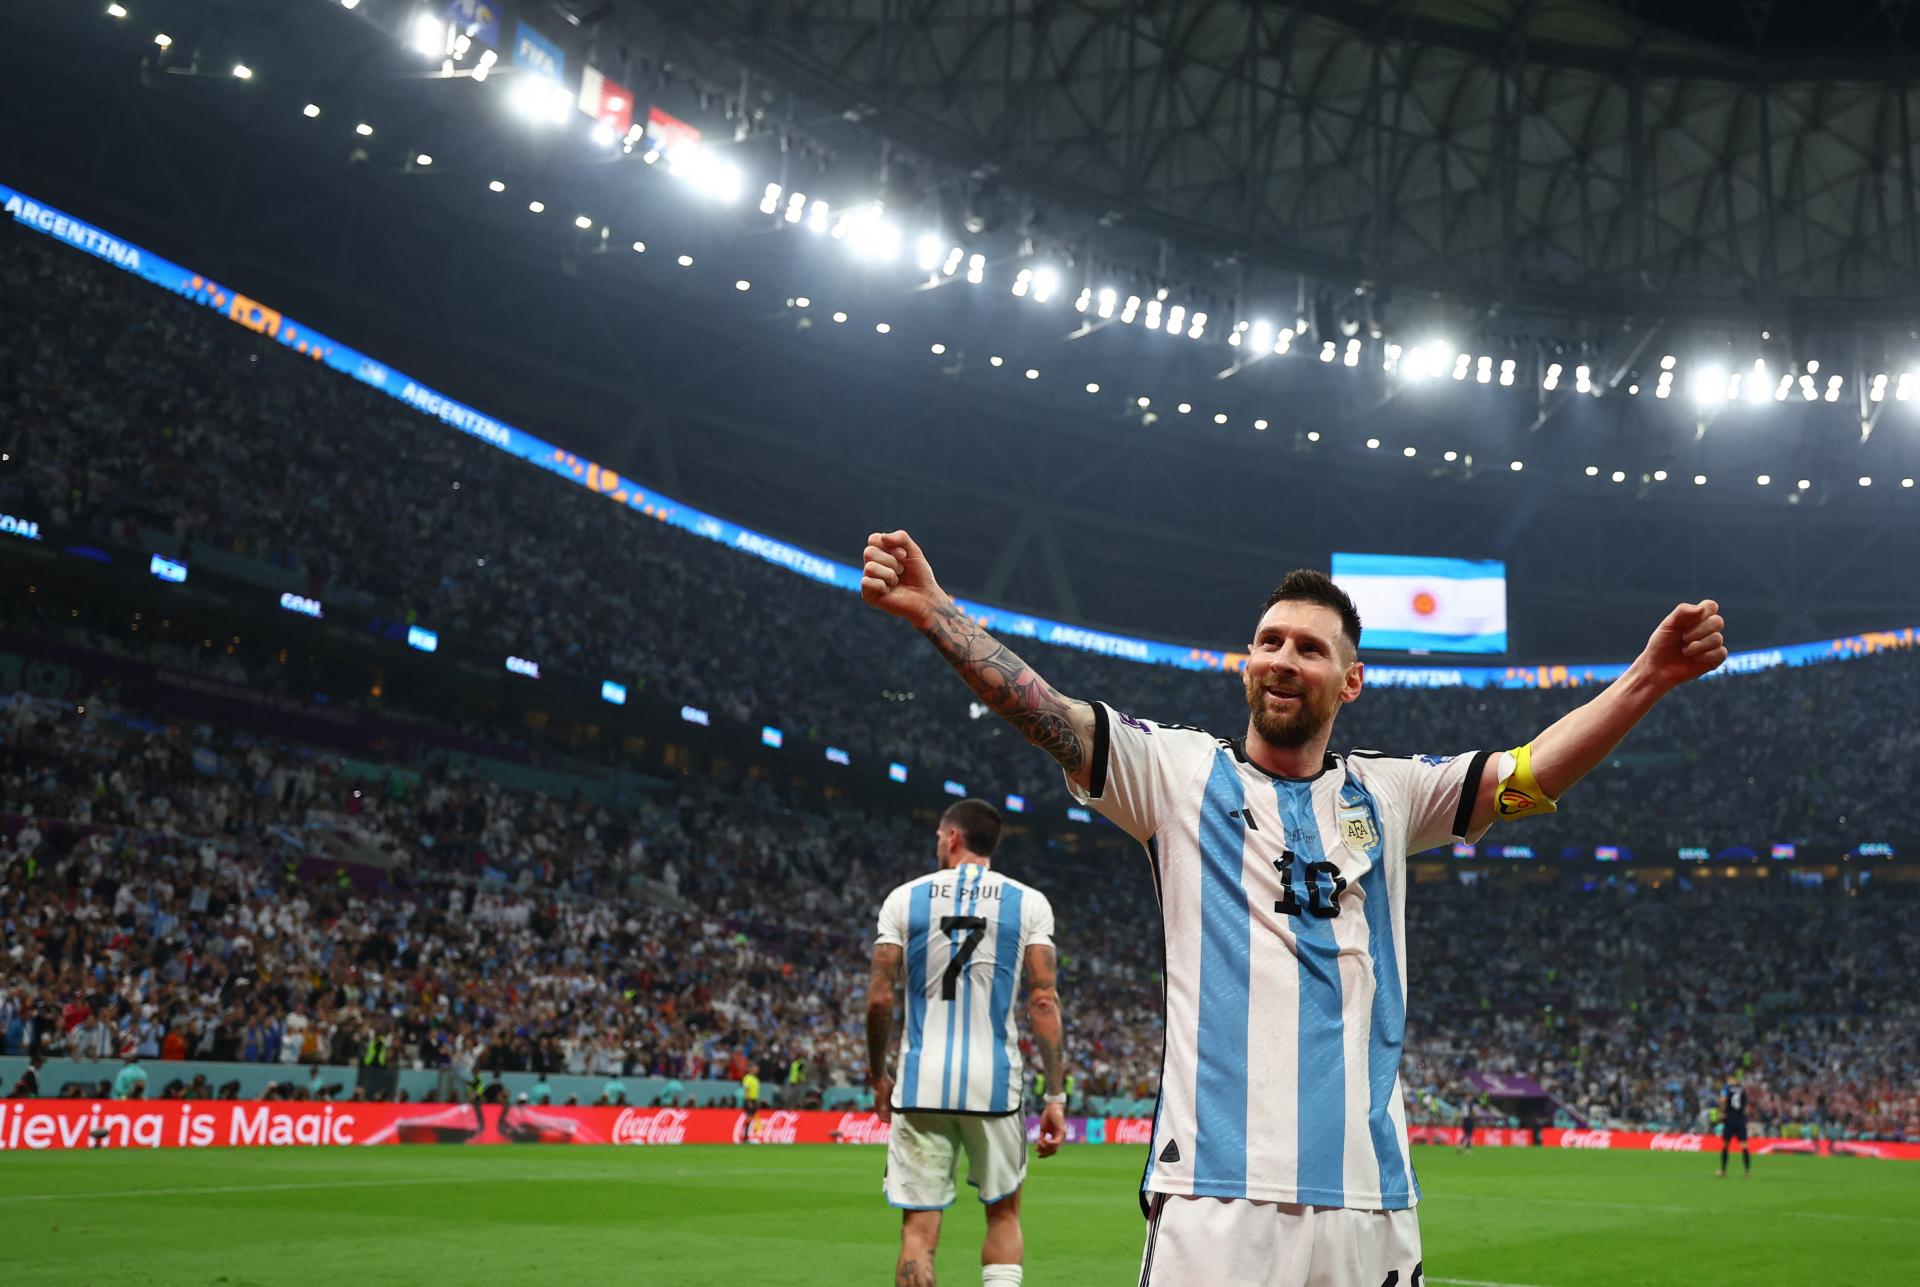 Messi doviedol Argentínu až do finále, s Chorvátmi si ľahko poradila